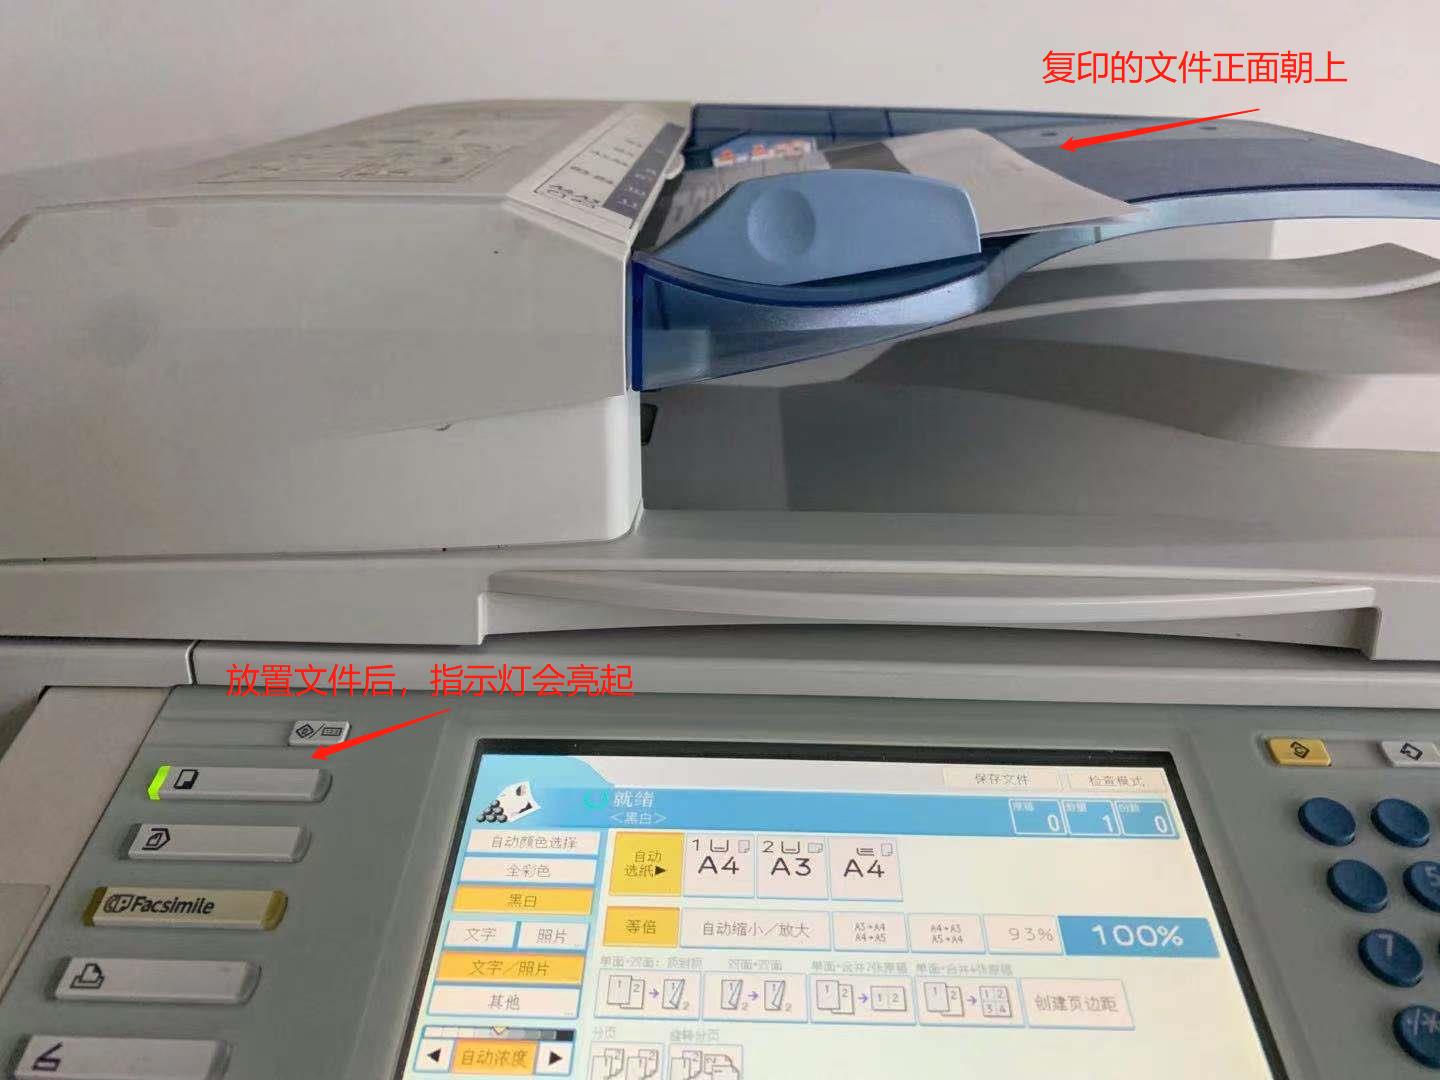 【秒懂知识库】这个机器如此简单 分享打印机像分享照片（全文）_奔图 M6700DW Plus-中关村在线